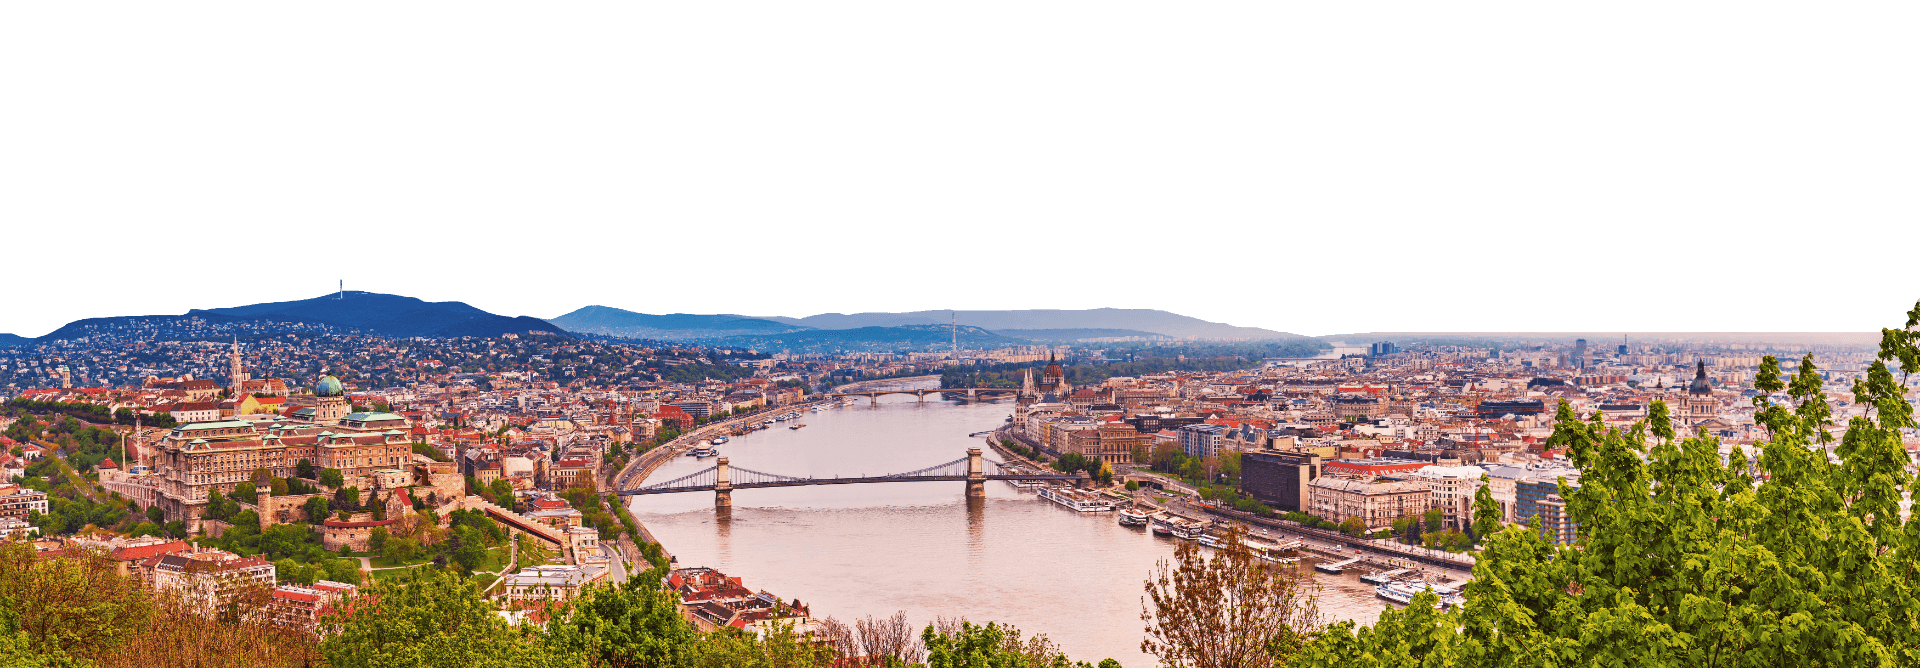 Budapesti költöztetés tájkép